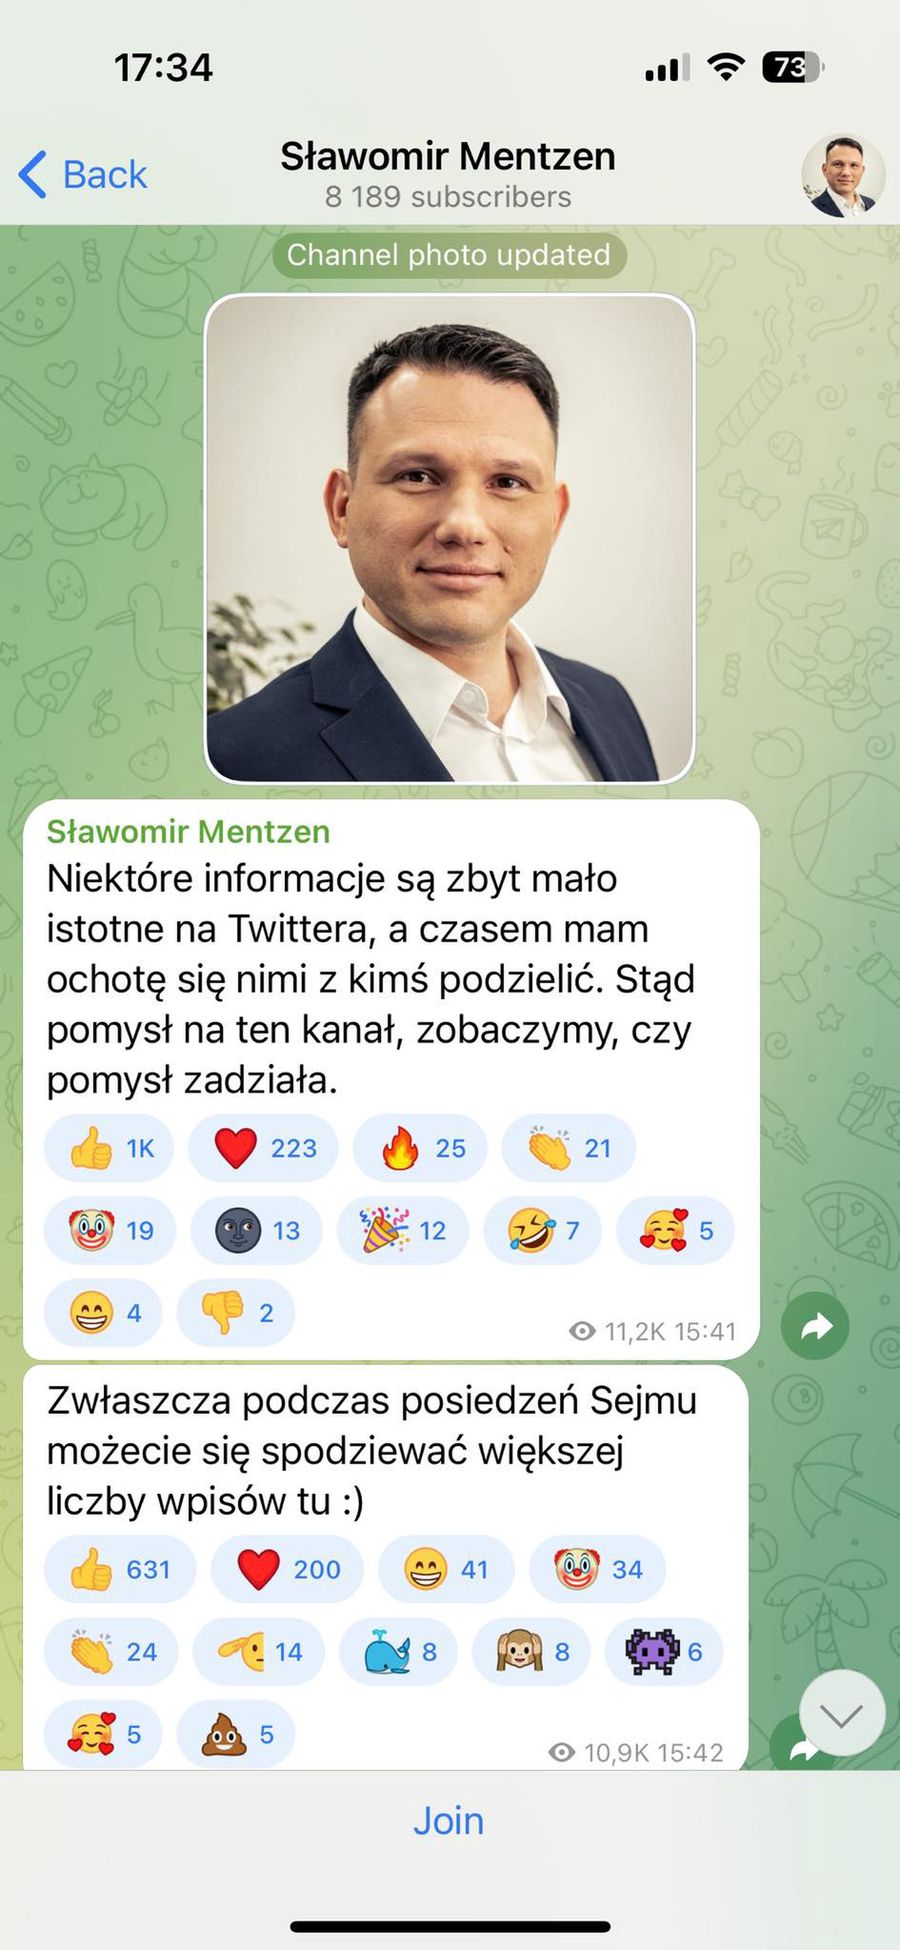 Sławomir Mentzen założył Telegram